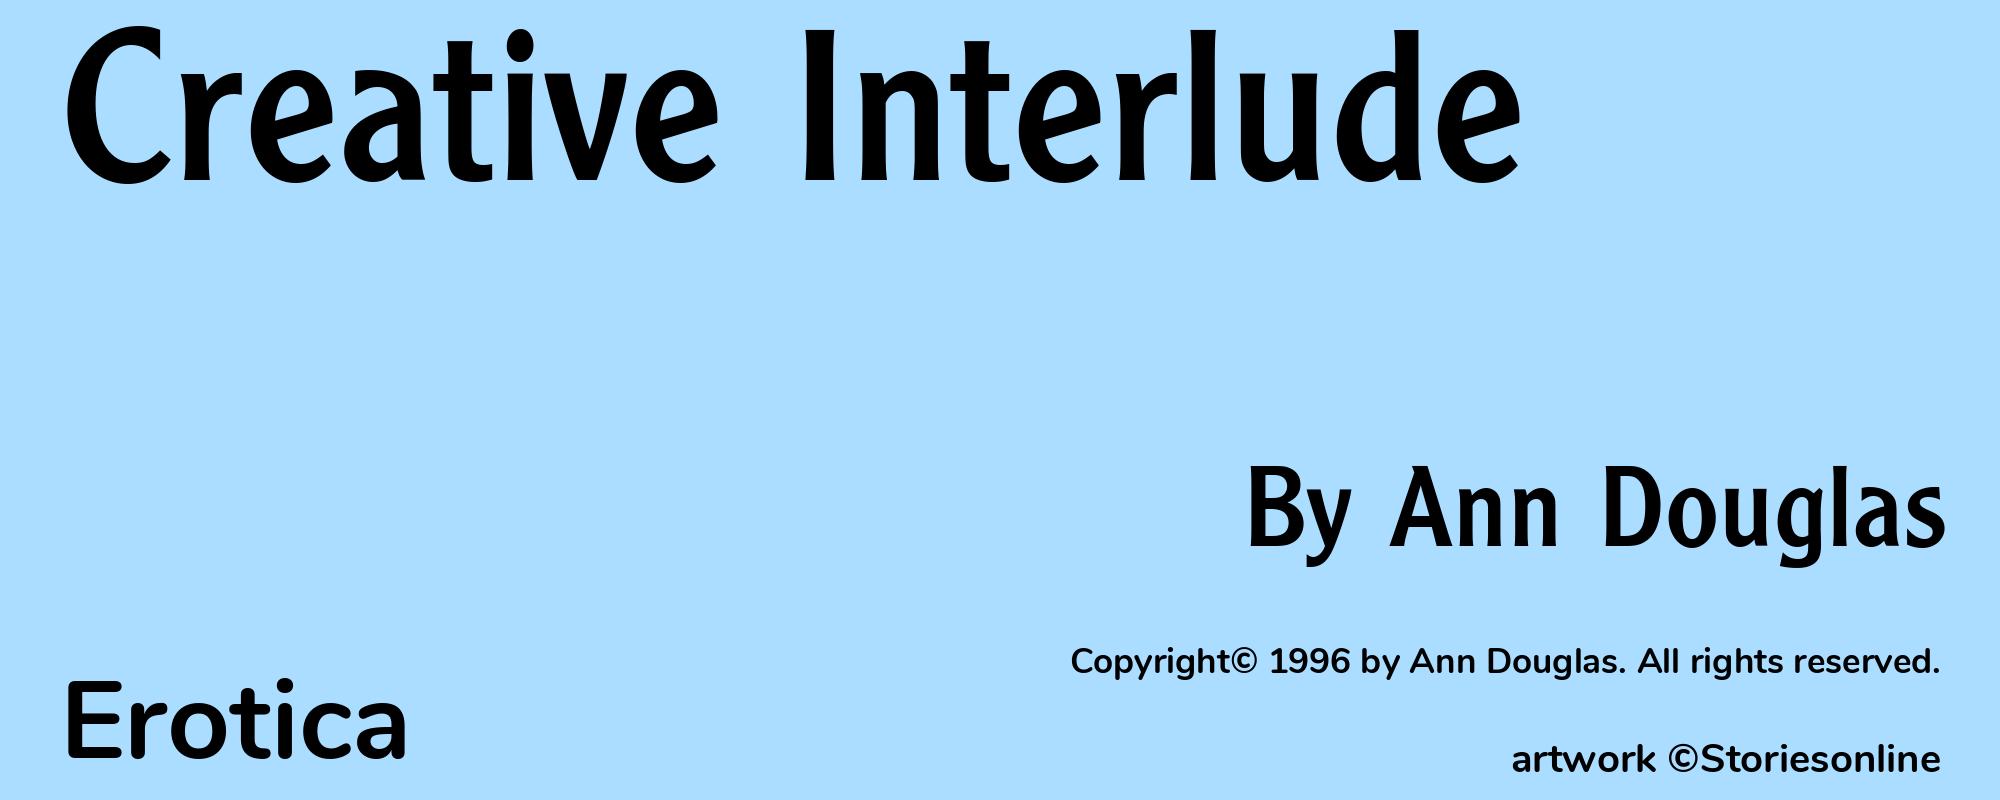 Creative Interlude - Cover